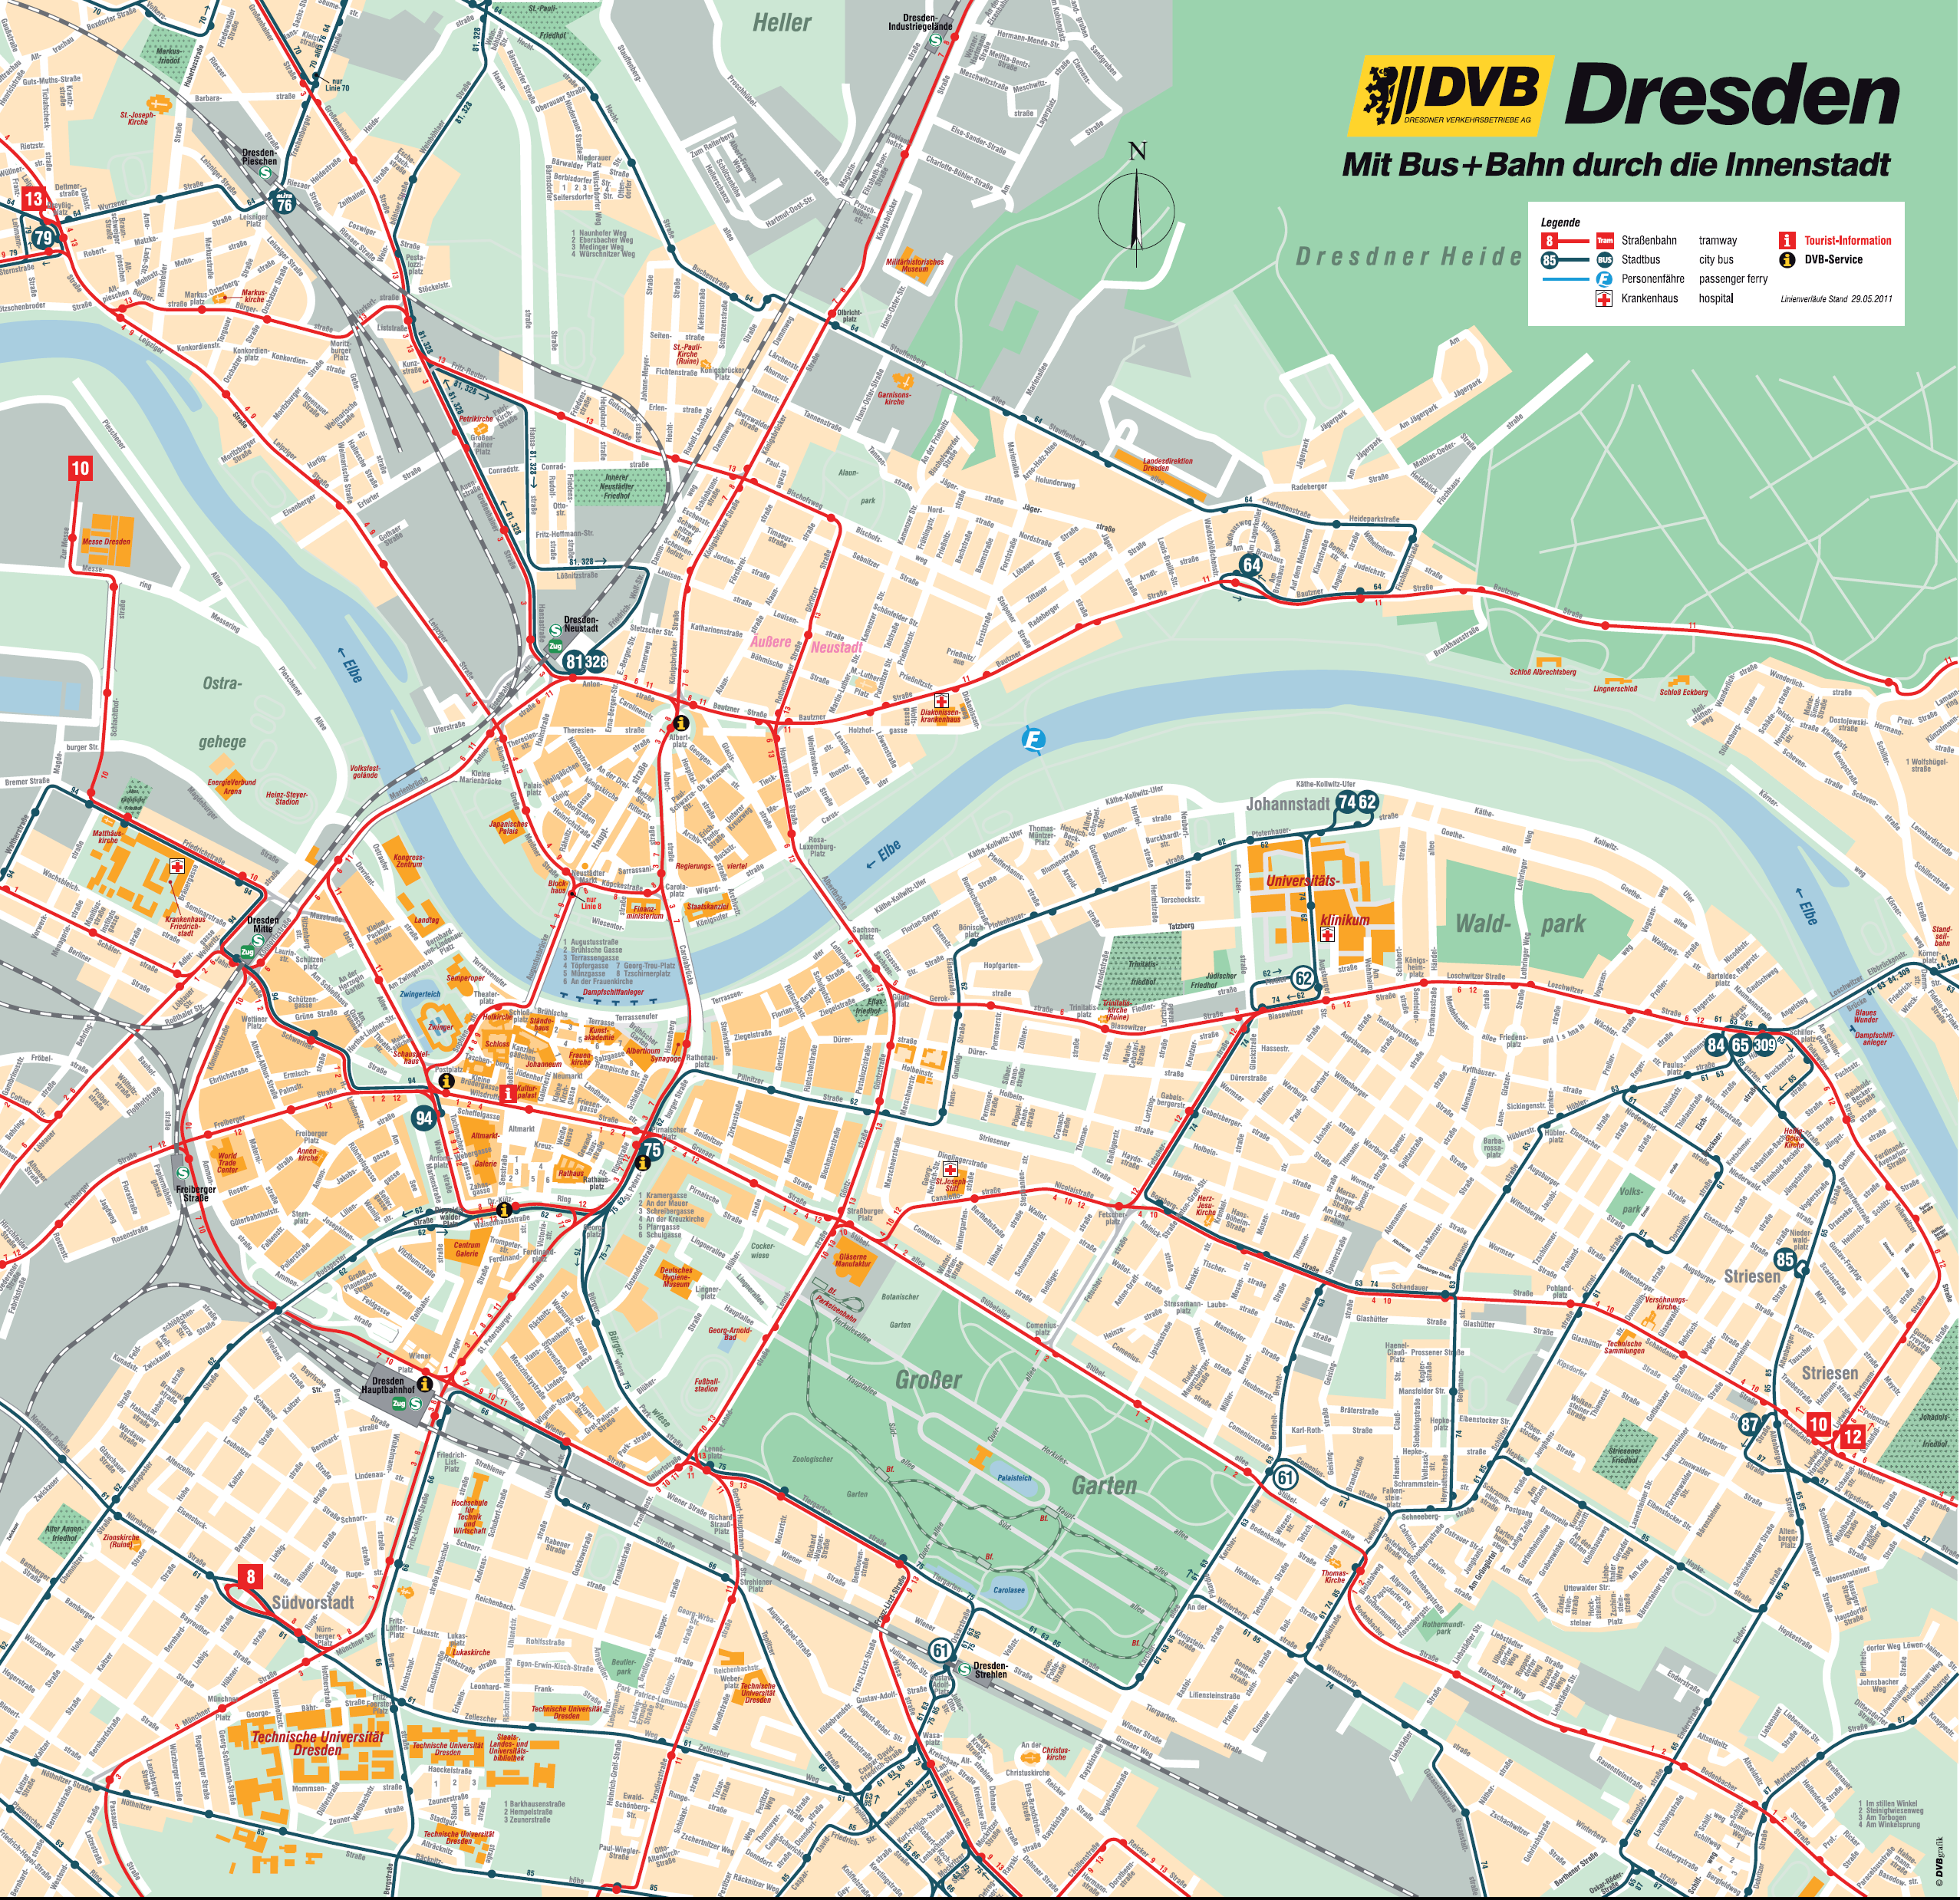 Drezda belvárosa a helyi közösségi közlekedést lebonyolító cég térképén. A piros vonalak a villamost, míg a kékek a városi buszokat jelölik<br>(forrás: DVB AG)